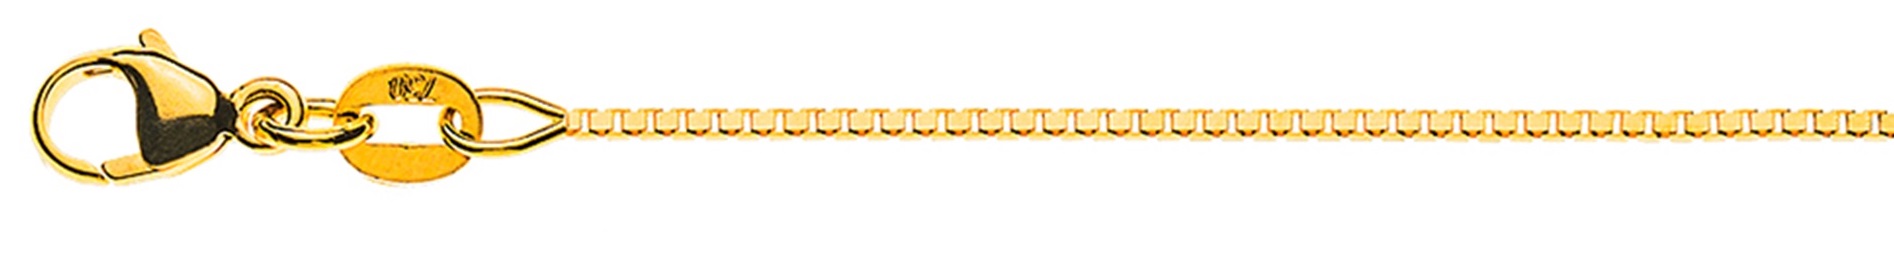 AURONOS Élégance Necklace yellow gold 14K Venetian chain diamond cut 45cm 0.9mm